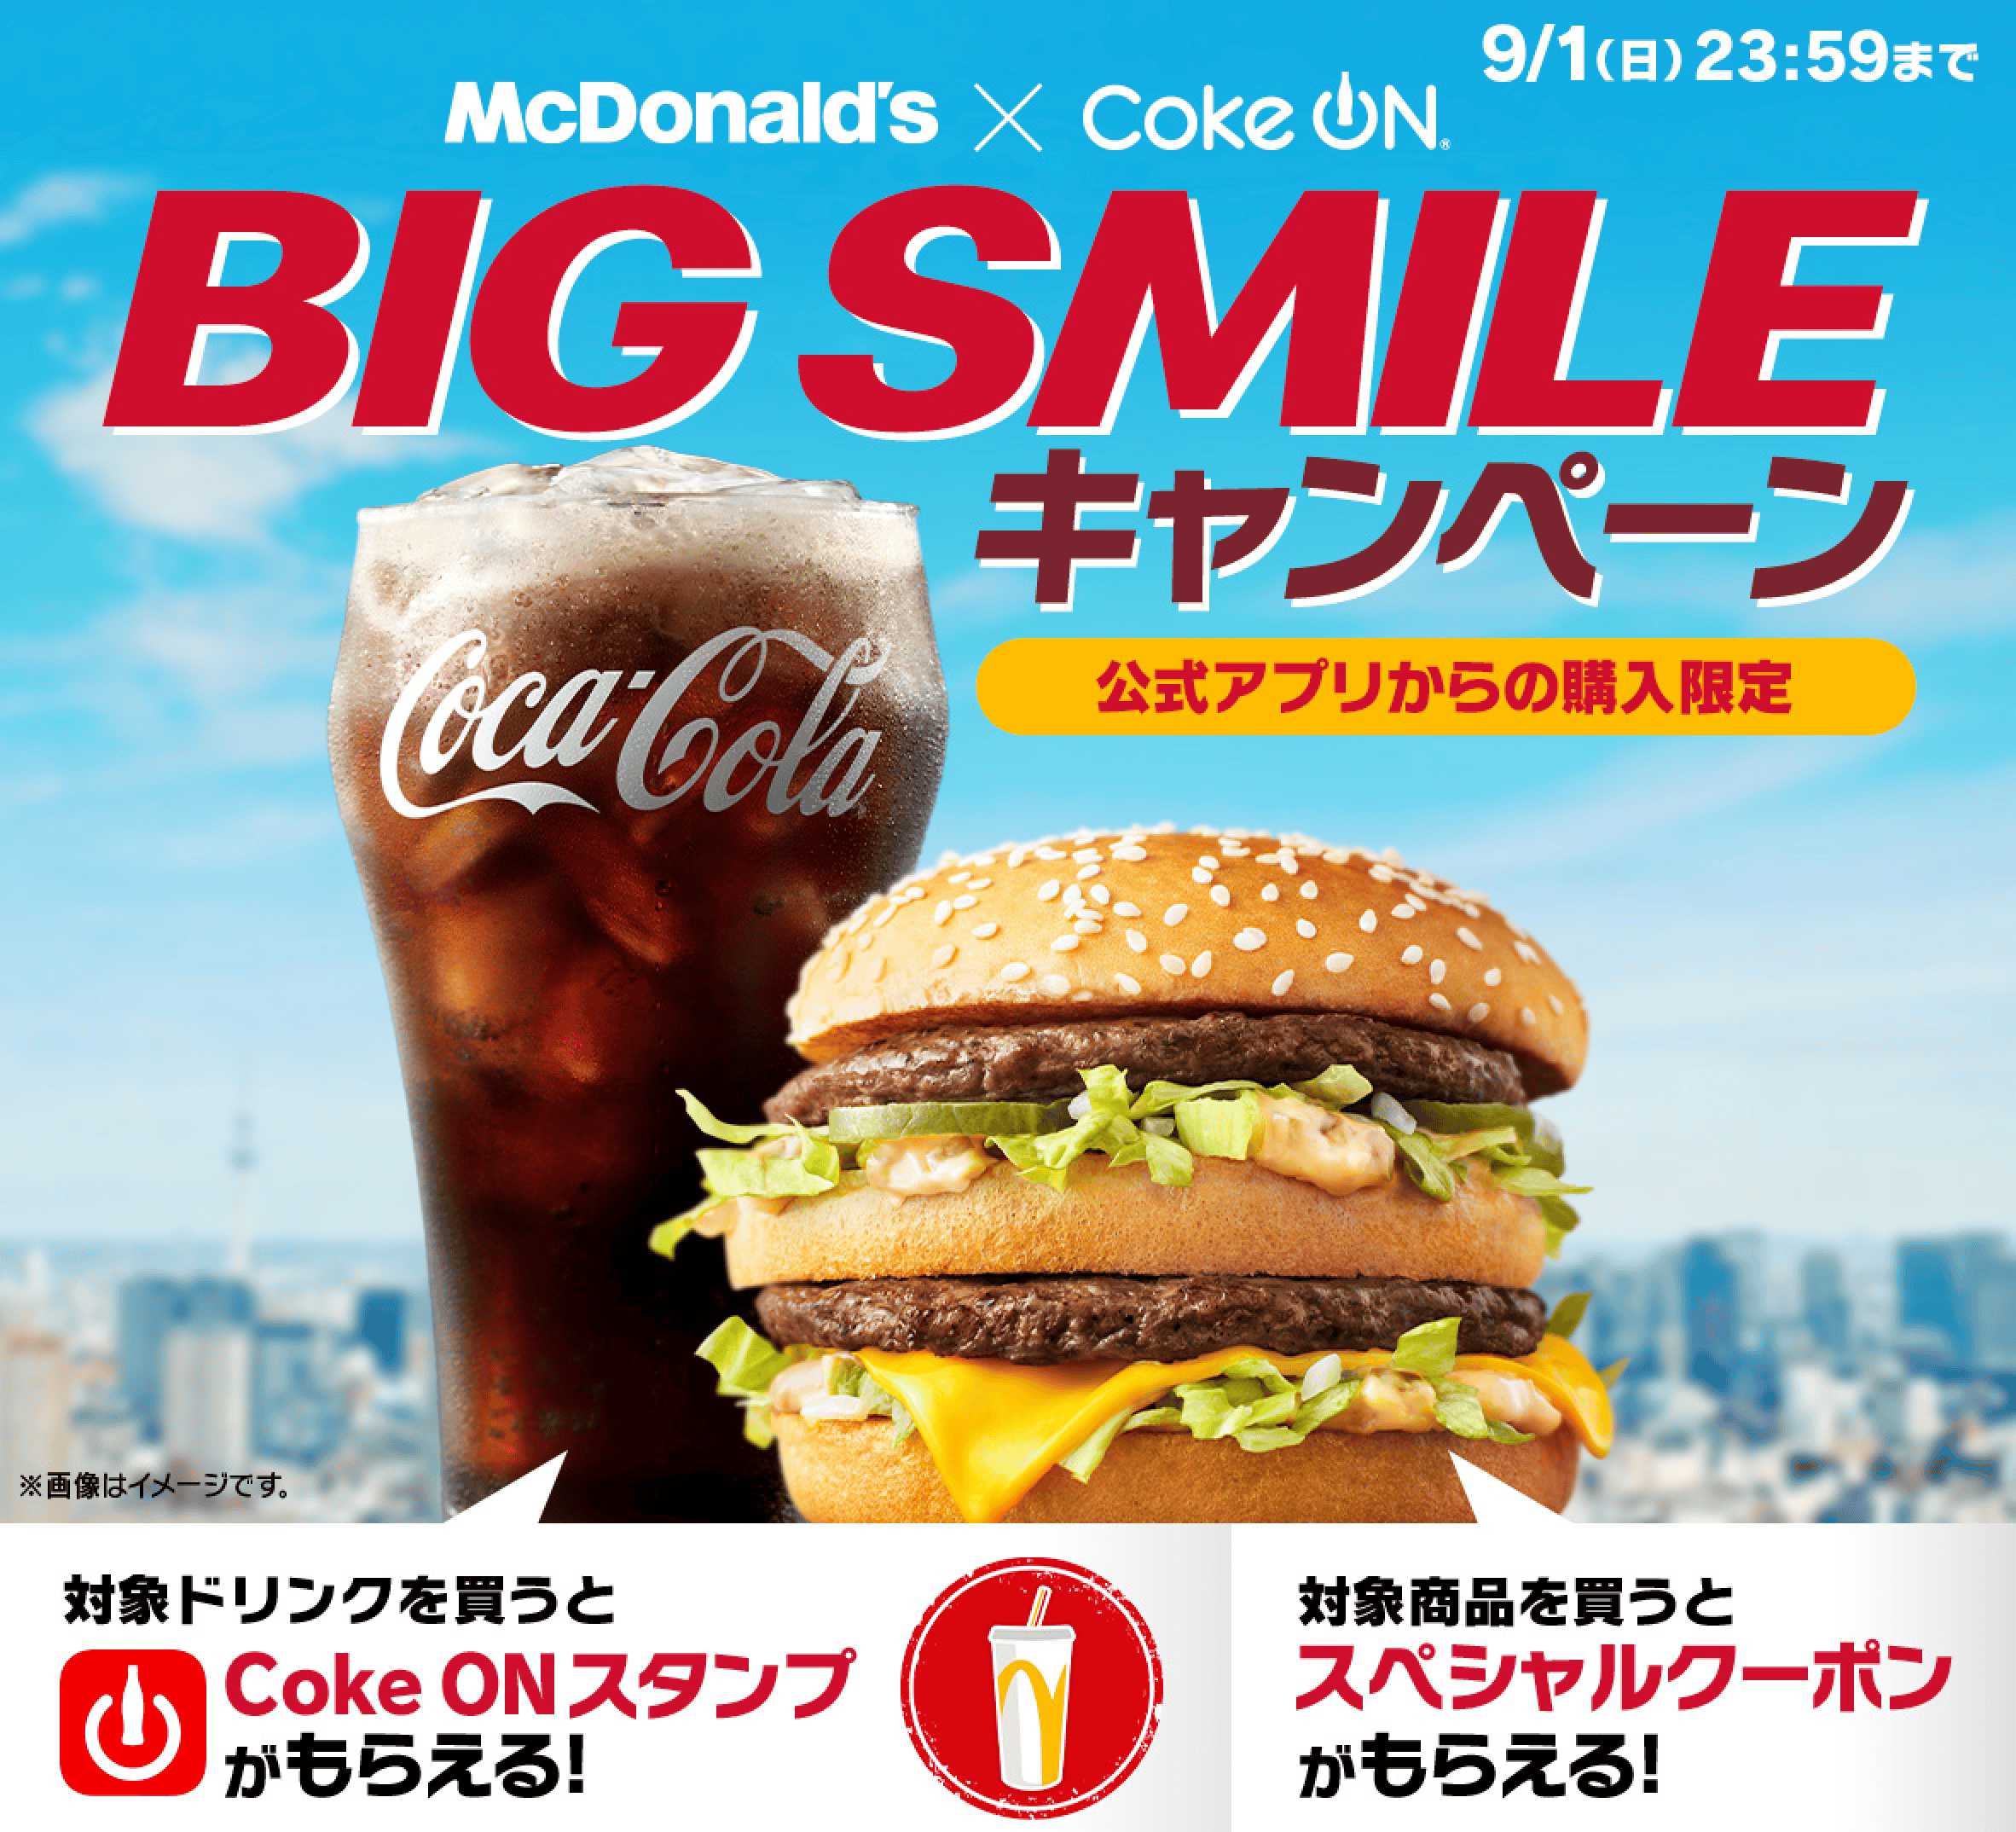 マクドナルド×Coke ON BIG SMILEキャンペーン